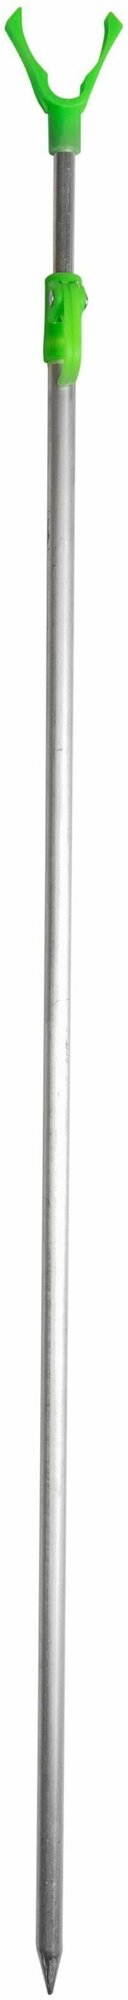 Подставка для удочки тип 2 - ручка (телескоп 1.8м аллюминий пластиковый стопор-ручка)